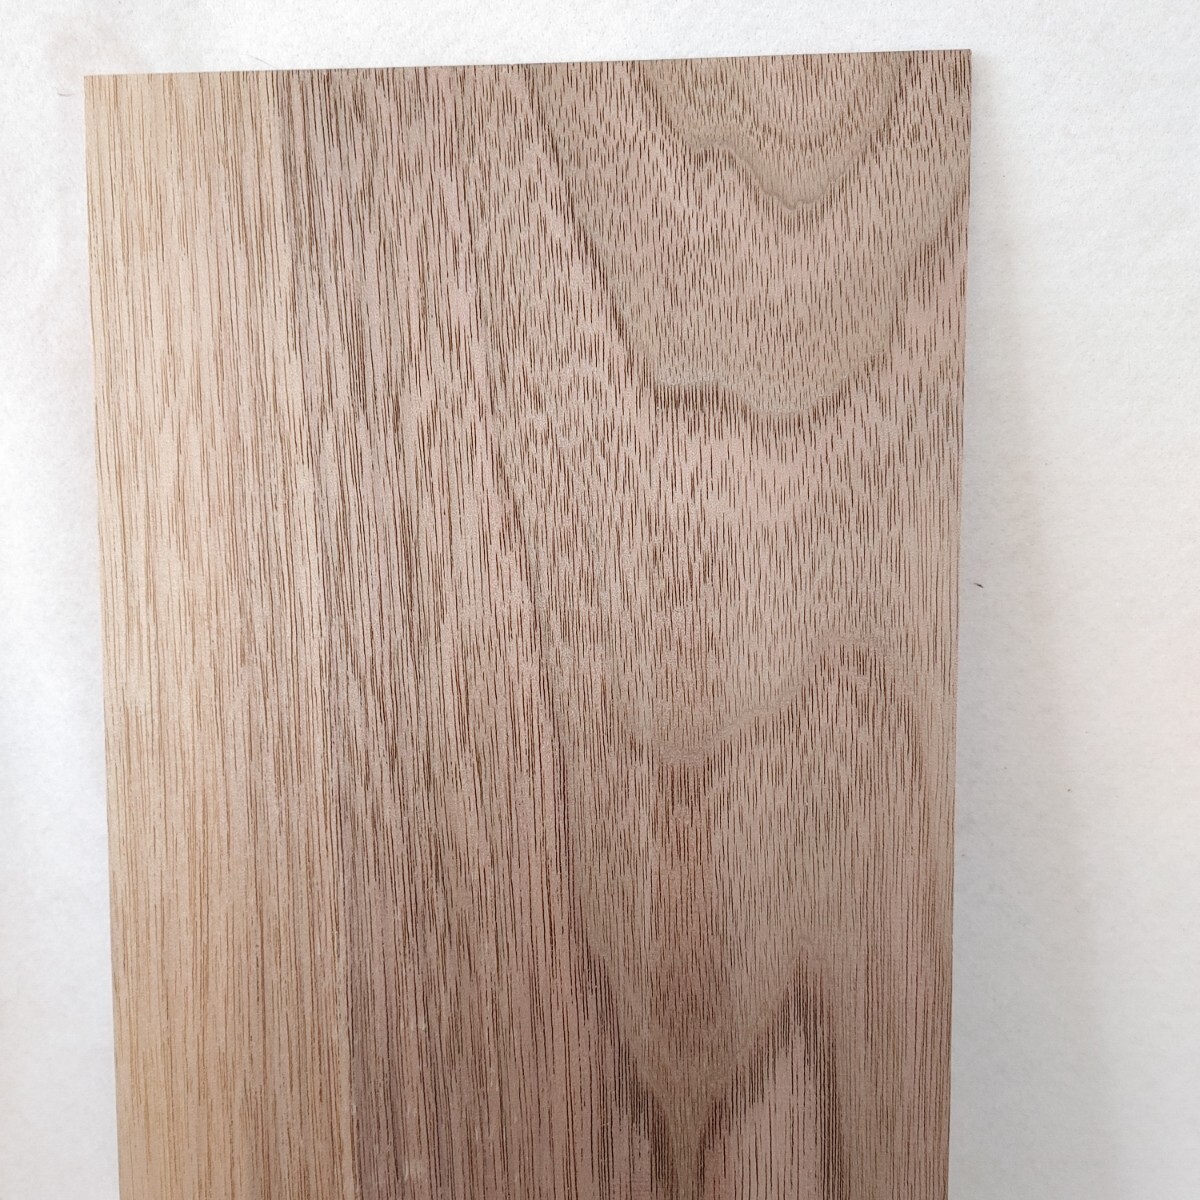 【薄板3mm】ウオルナット(84) 木材_画像3